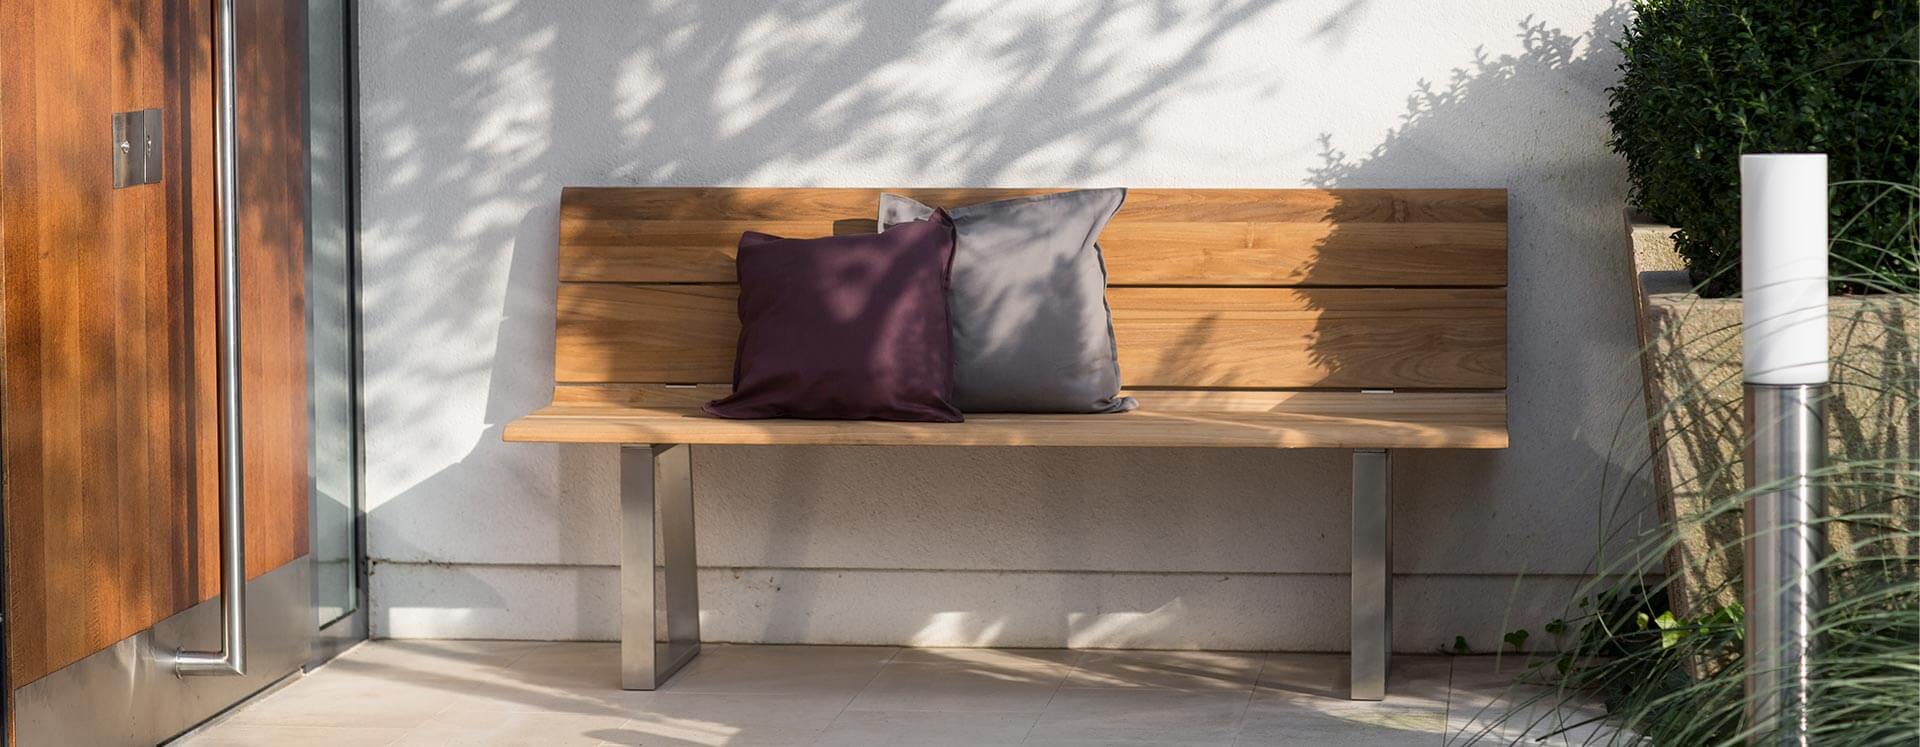 Gartenbänke und Sitzbänke für mehr Komfort draußen | Niehoff Garden